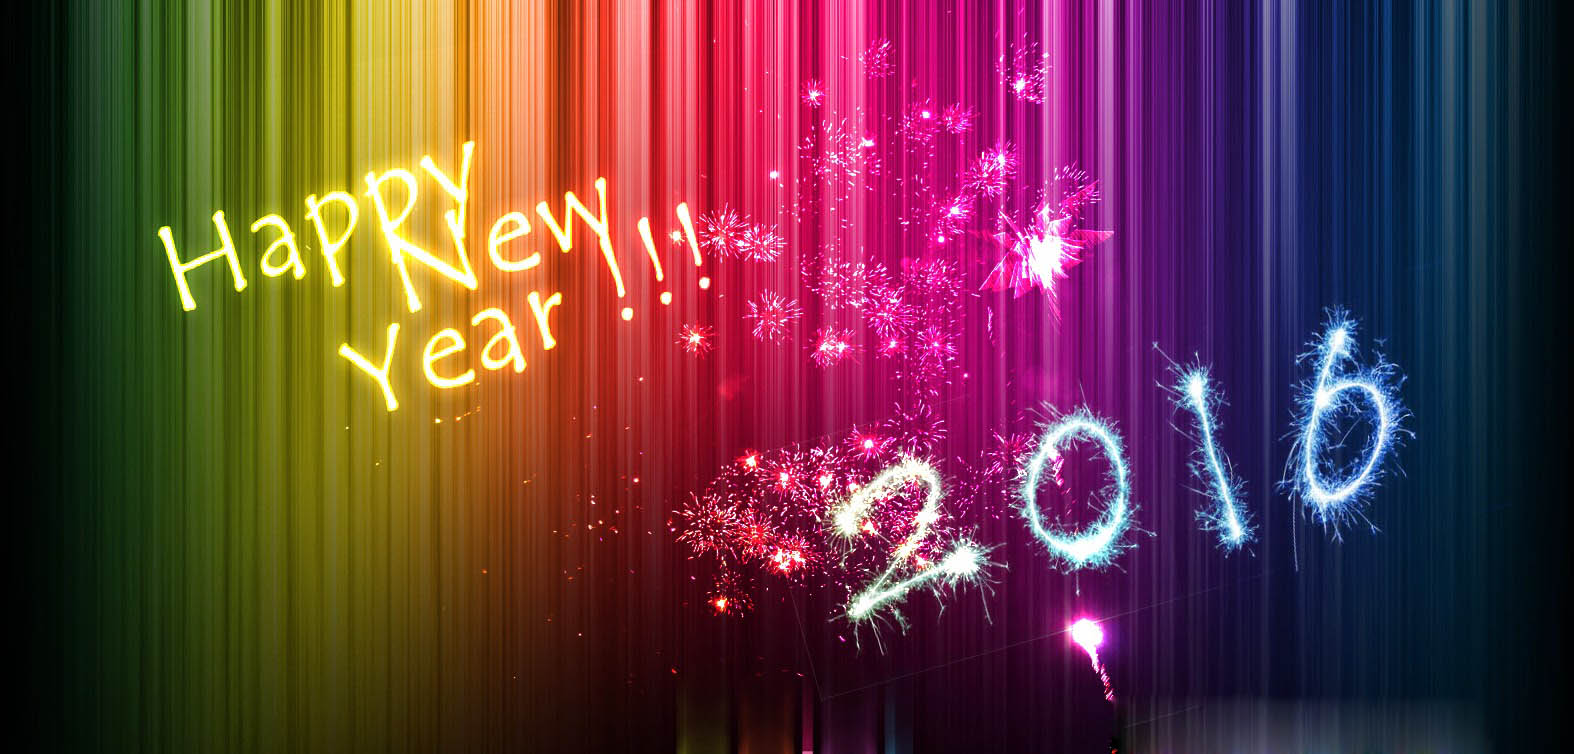 Happy New Year 2016 Images Happy New Year Images 2016